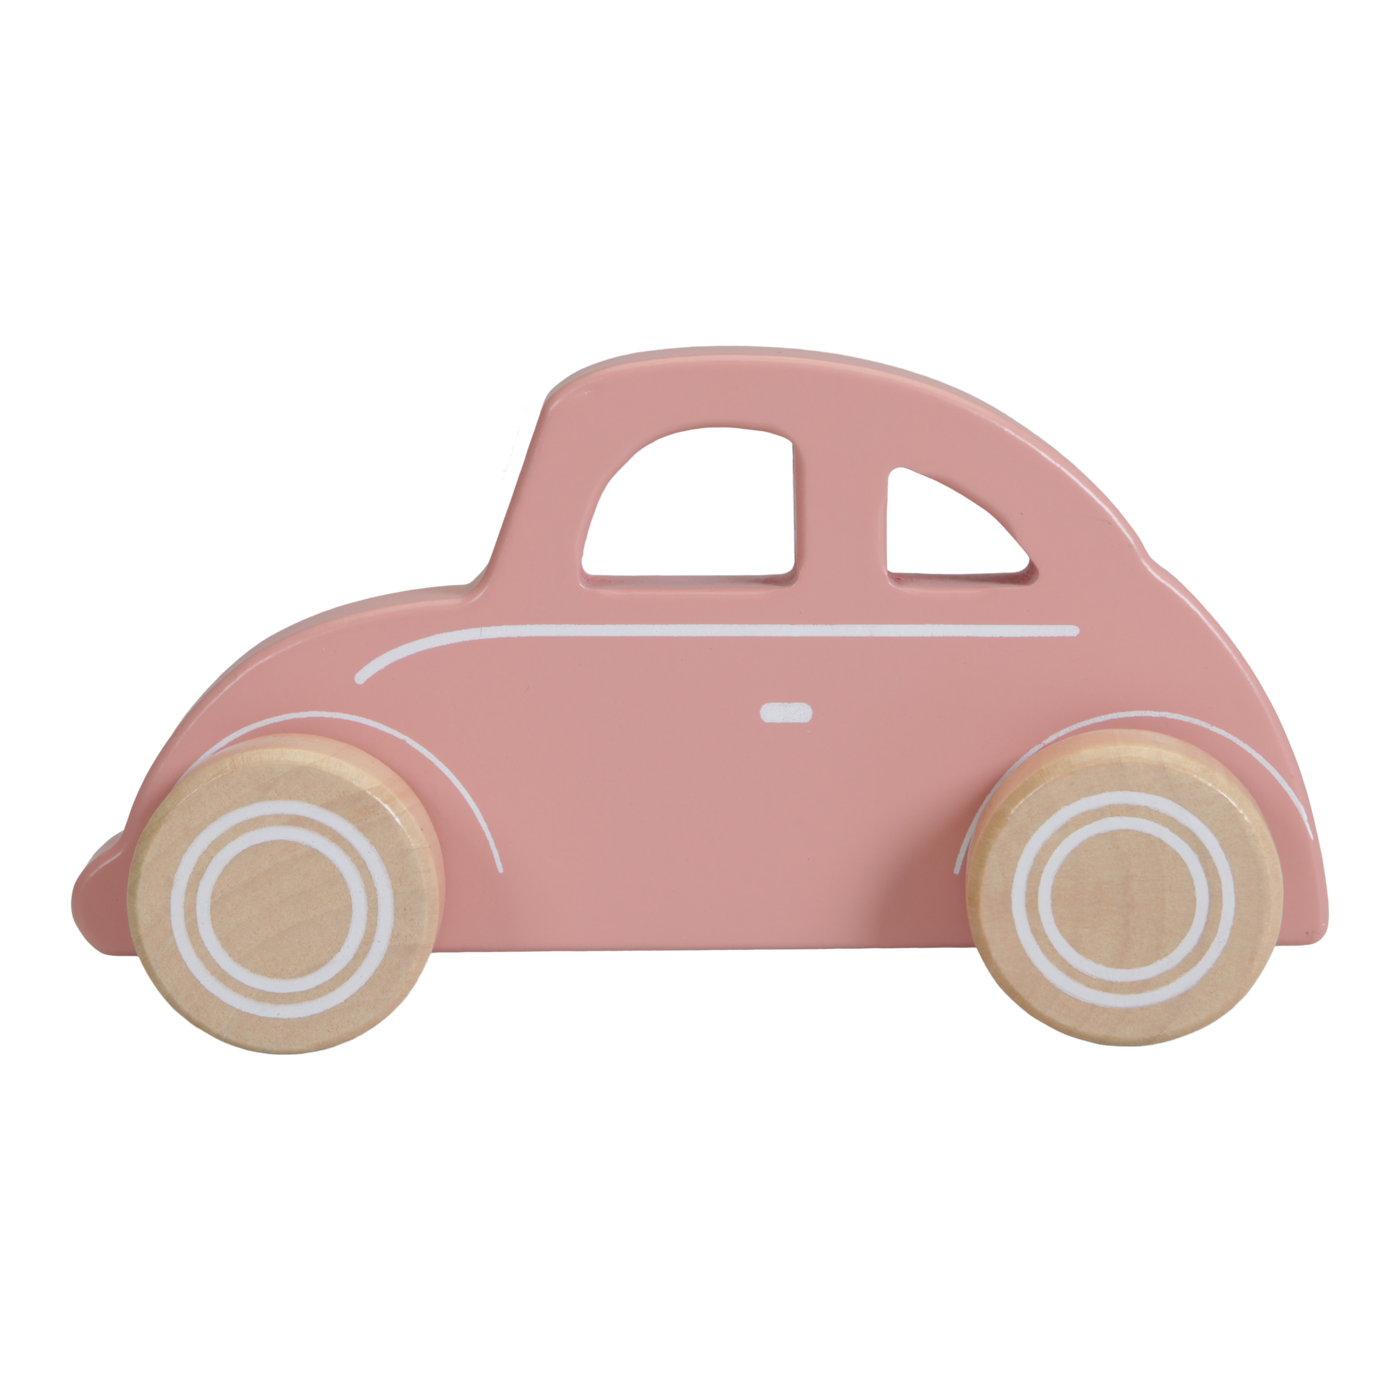 Little Dutch Wooden Pink Car